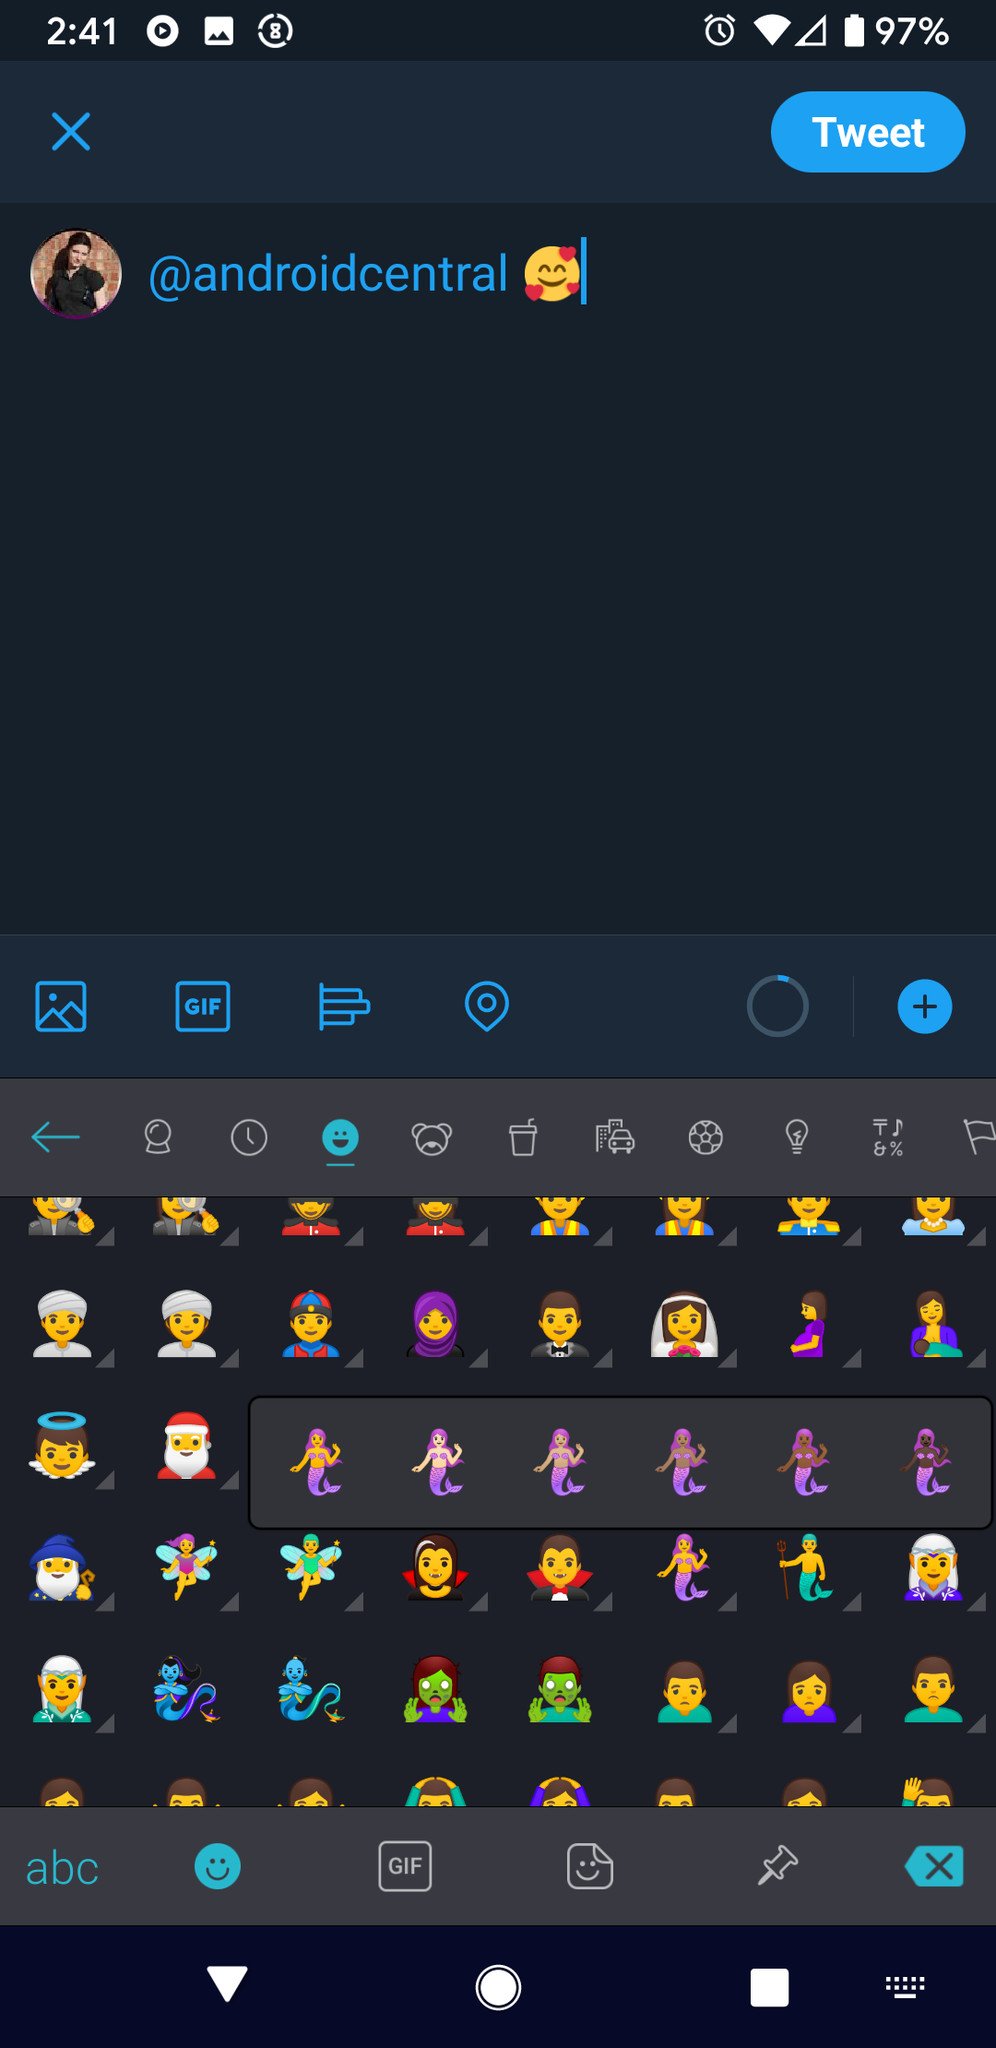 add-emoji-5-swiftkey.jpg?itok=g7DyWuBb